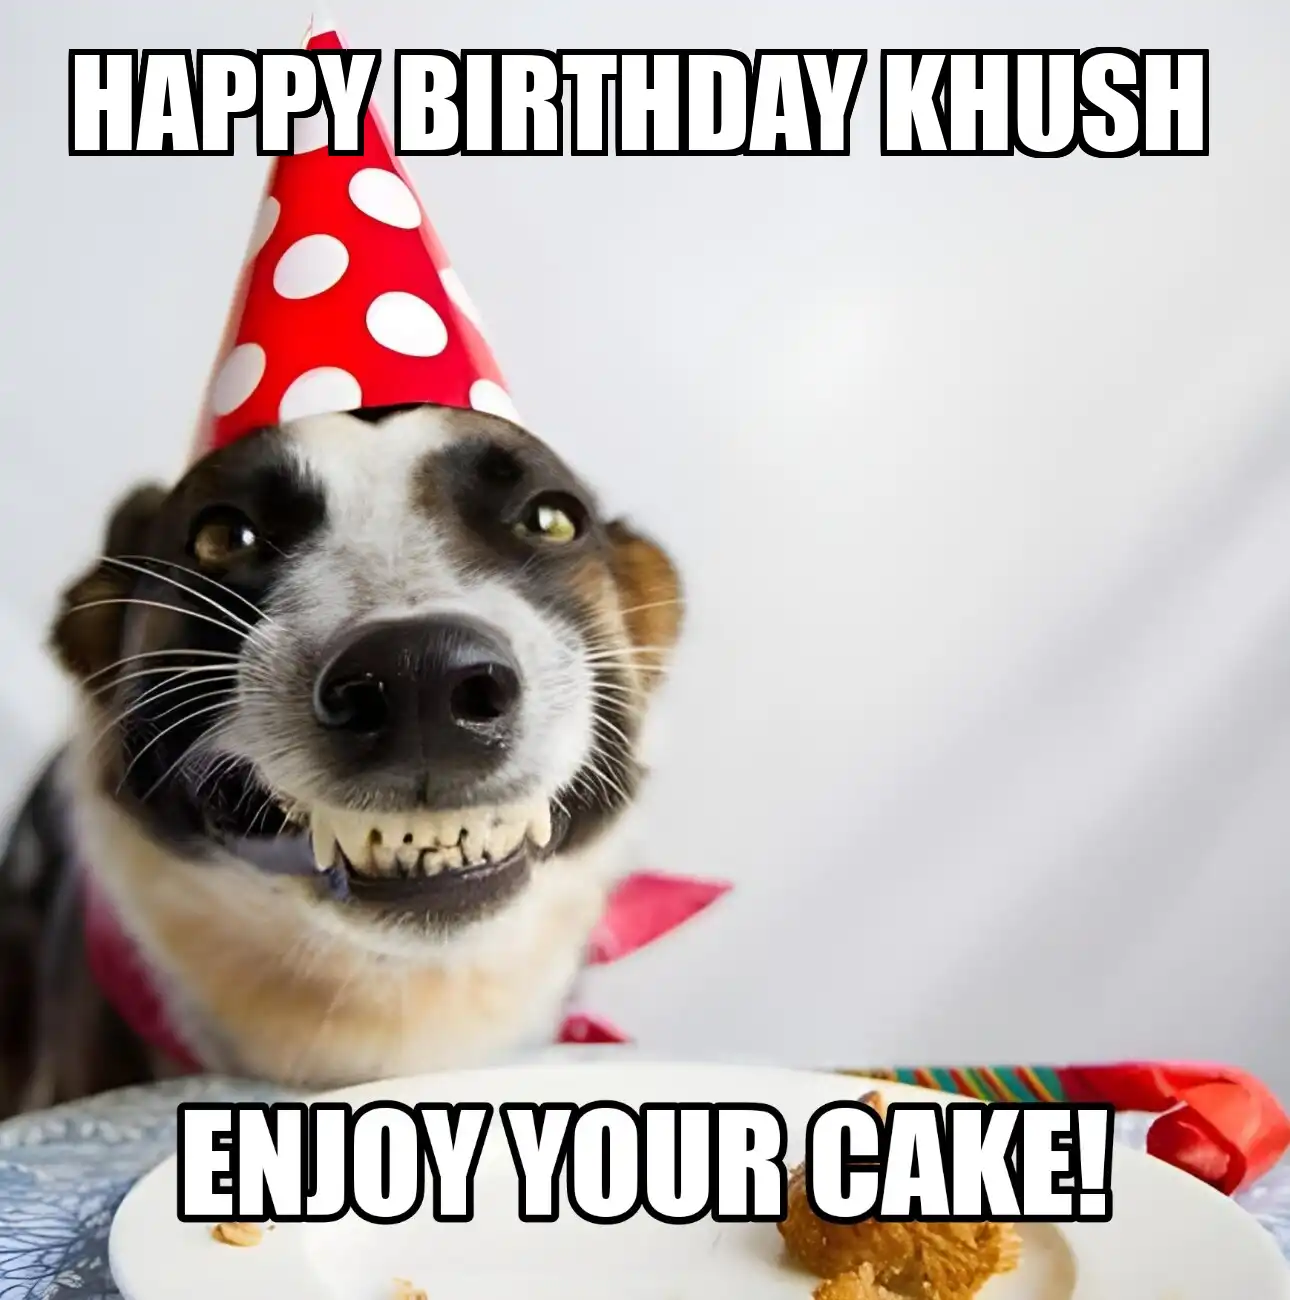 Happy Birthday Khush Enjoy Your Cake Dog Meme